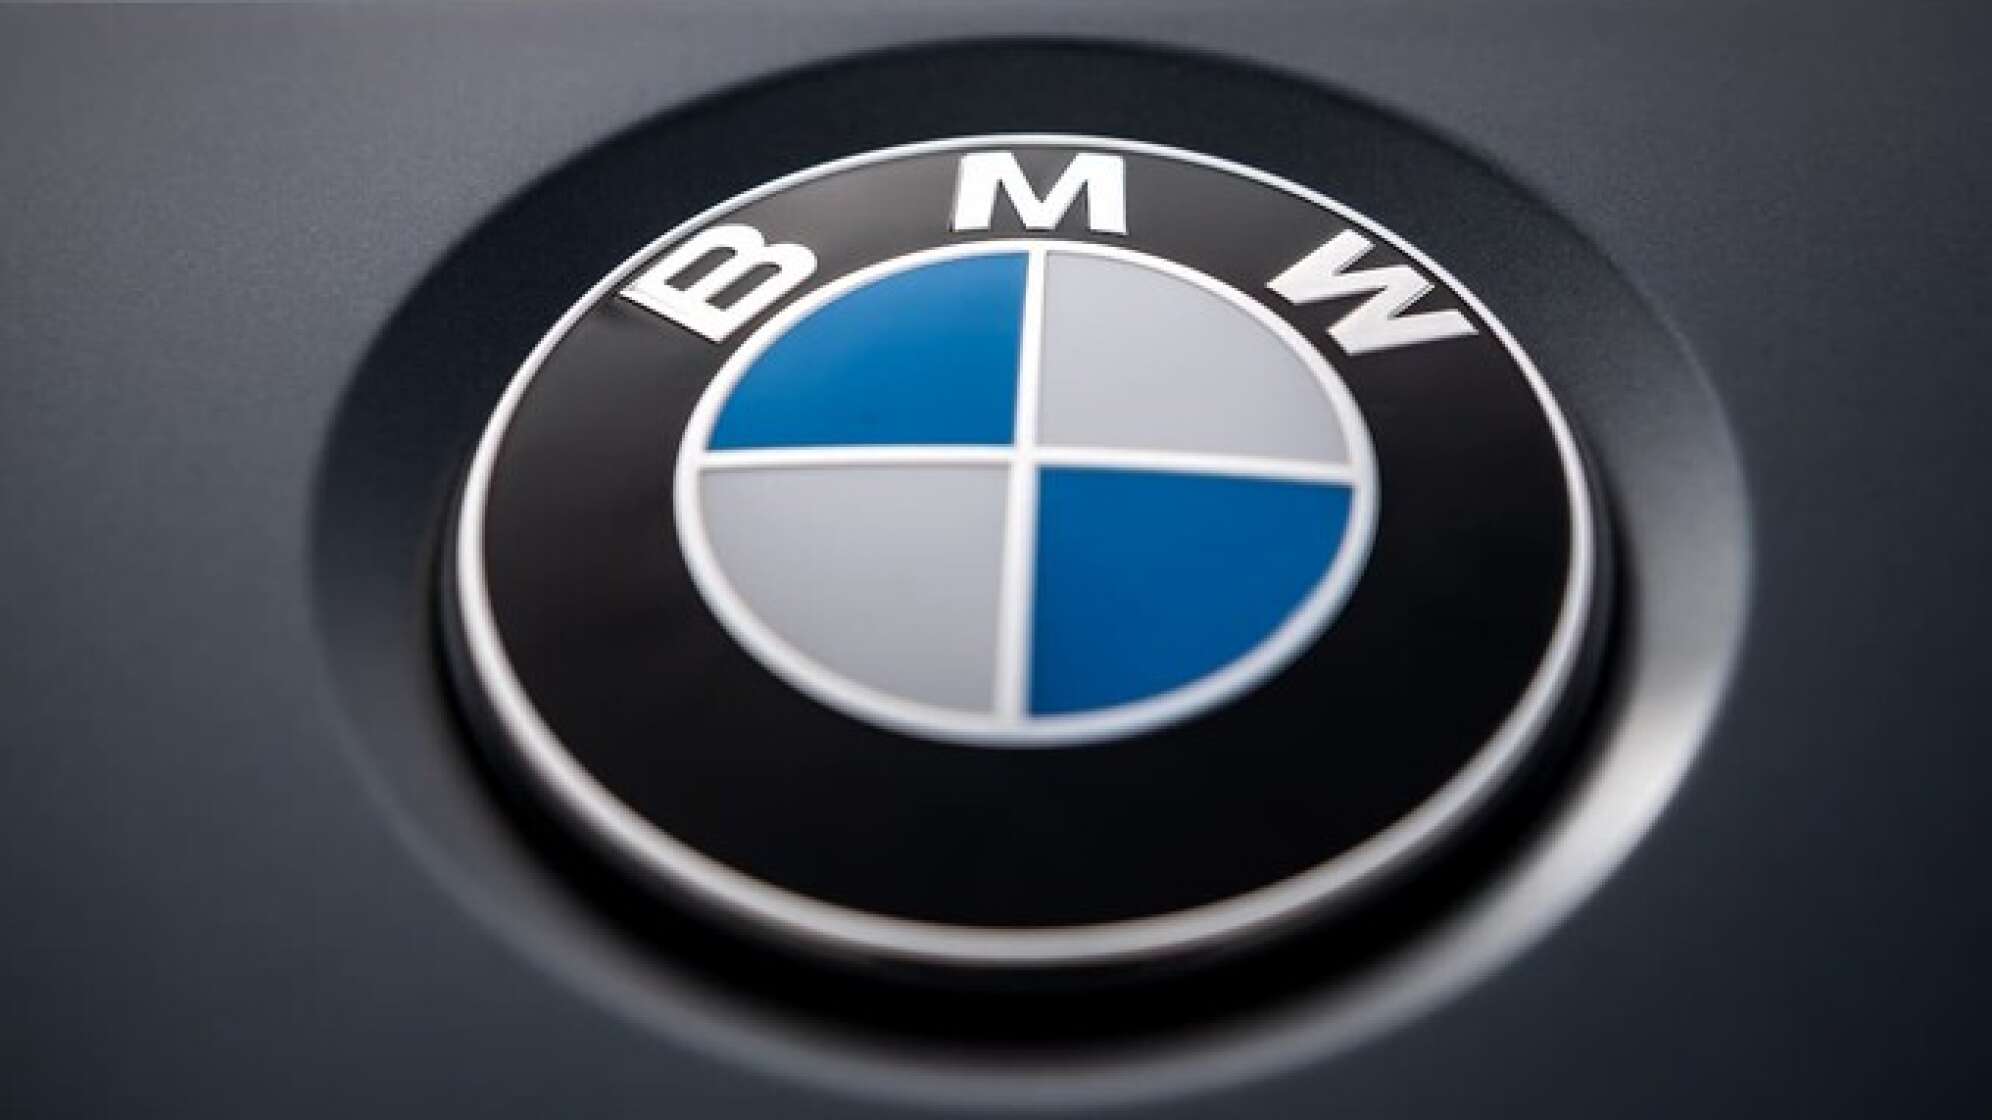 Sitzheizung im Abo - BMW mit neuem Geschäftsmodell